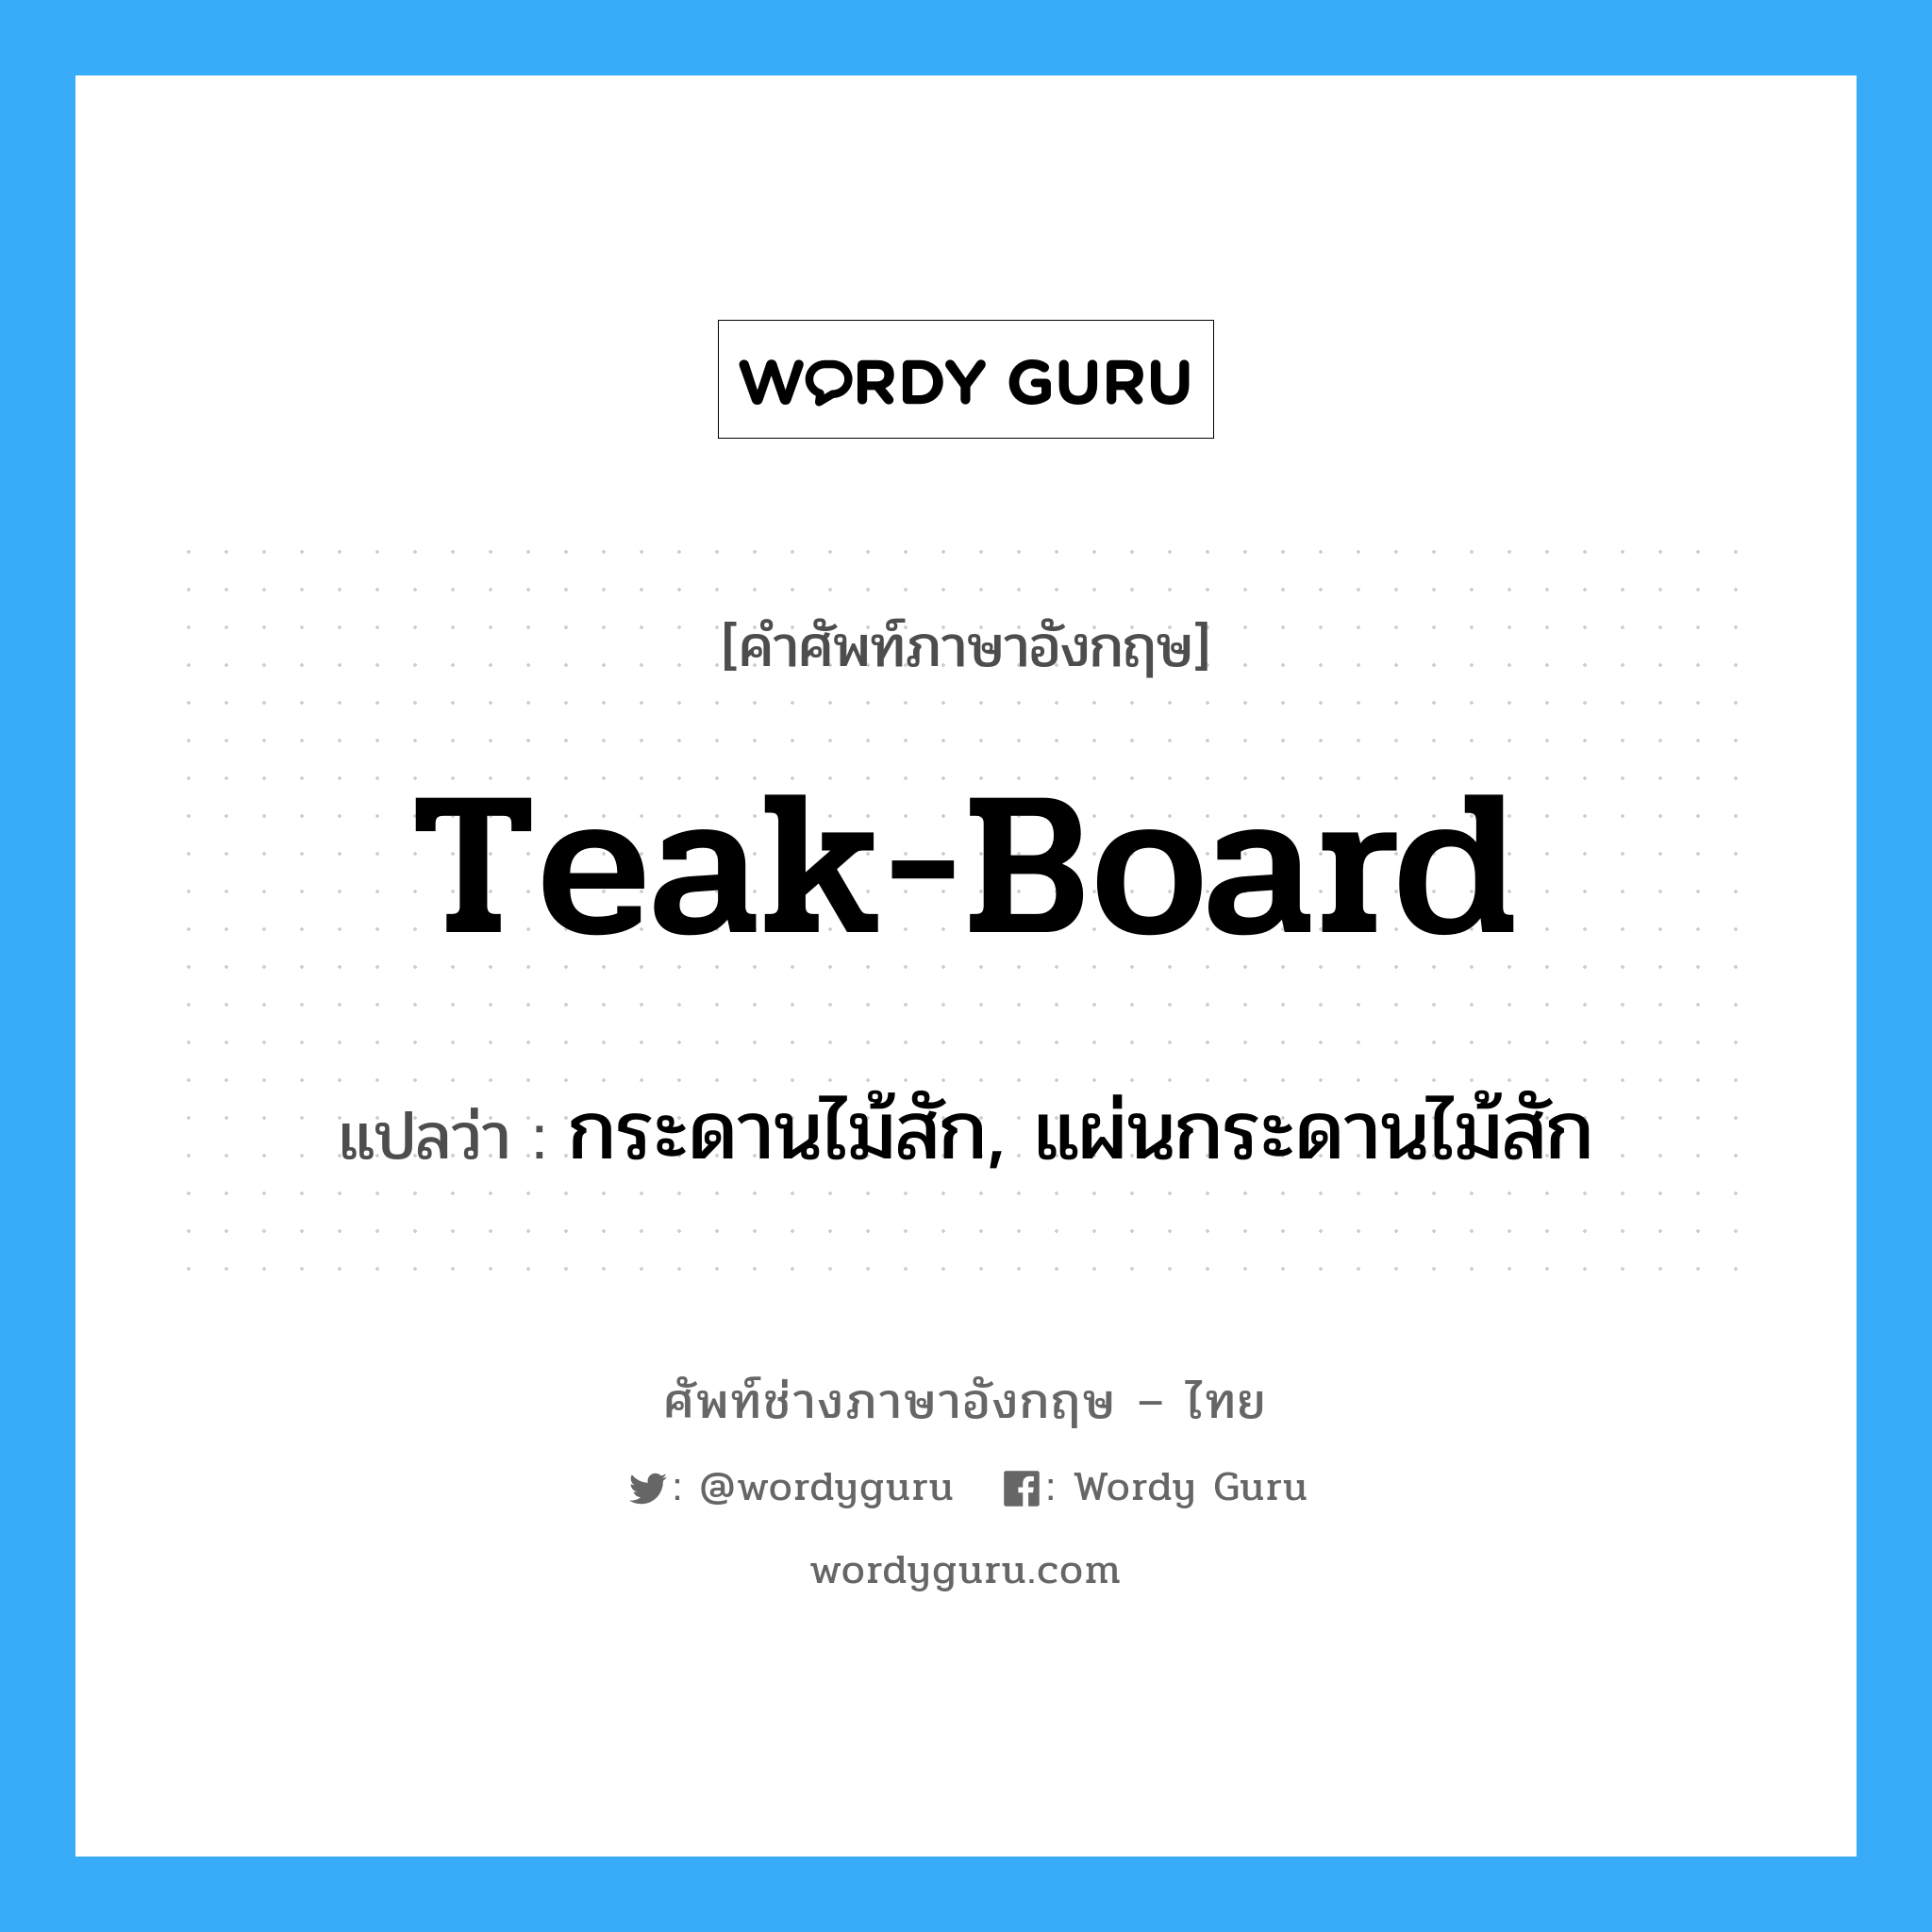 teak-board แปลว่า?, คำศัพท์ช่างภาษาอังกฤษ - ไทย teak-board คำศัพท์ภาษาอังกฤษ teak-board แปลว่า กระดานไม้สัก, แผ่นกระดานไม้สัก